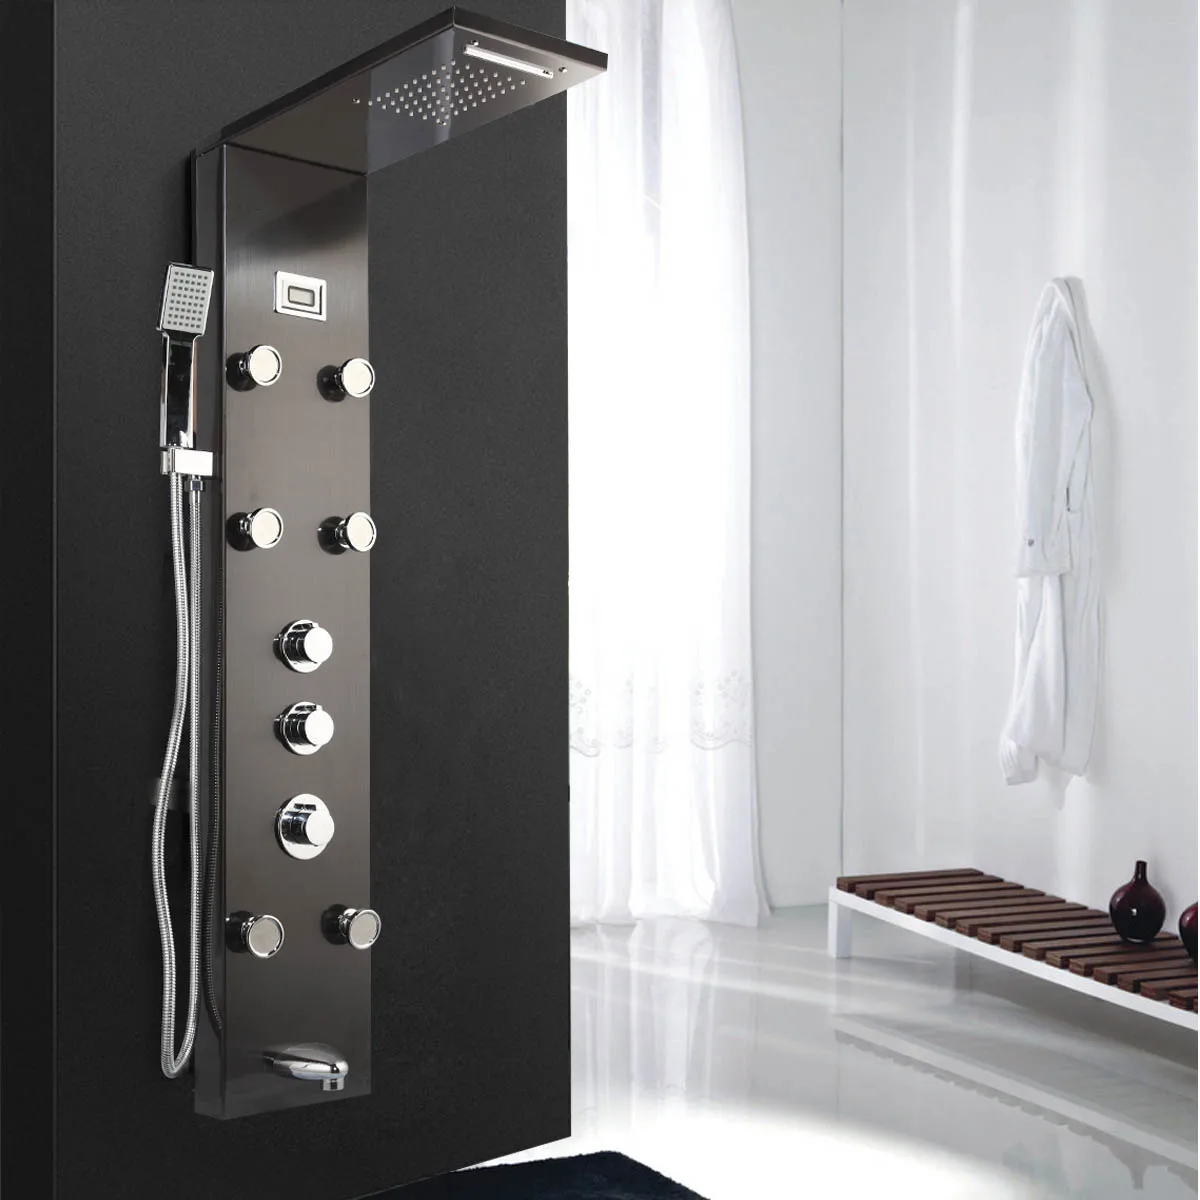 KEMAIDI черный цифровой дисплей душевая колонна для ванной комнаты ручной Душ Ванна Массаж Спа струи ванна светодиодный смеситель для душа